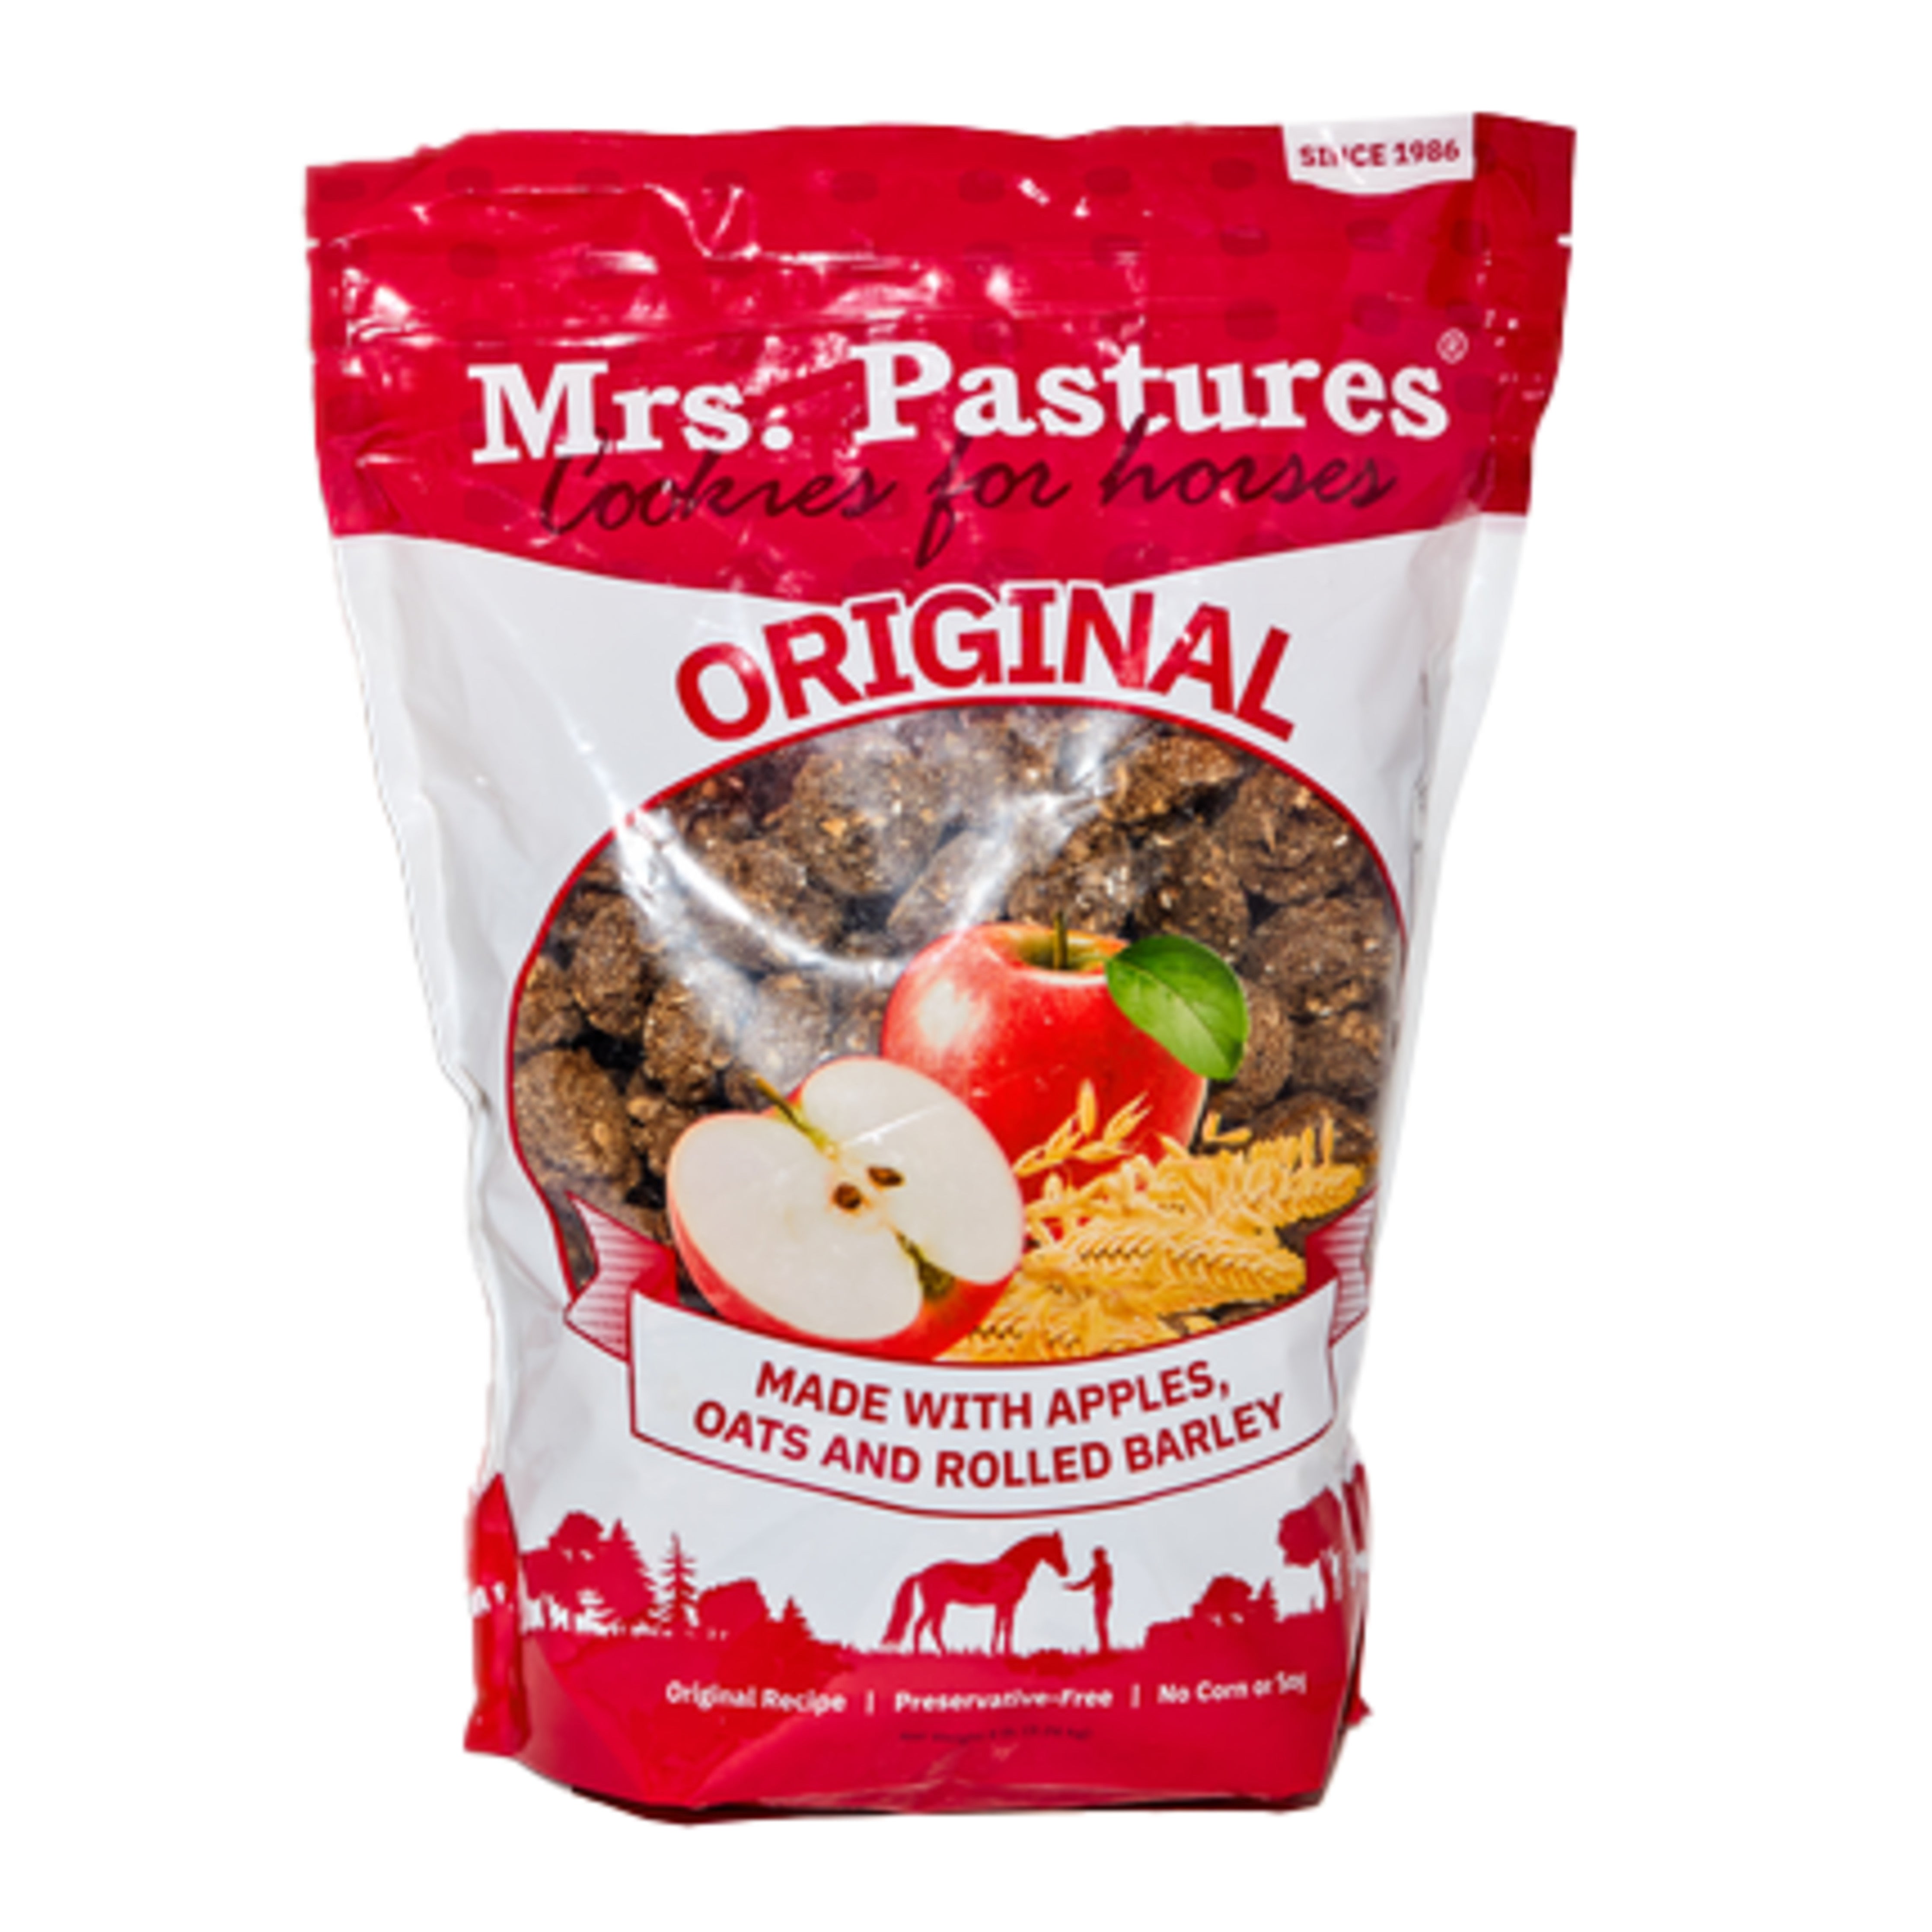 Mrs Pastures Original Cookie 8 oz pouch